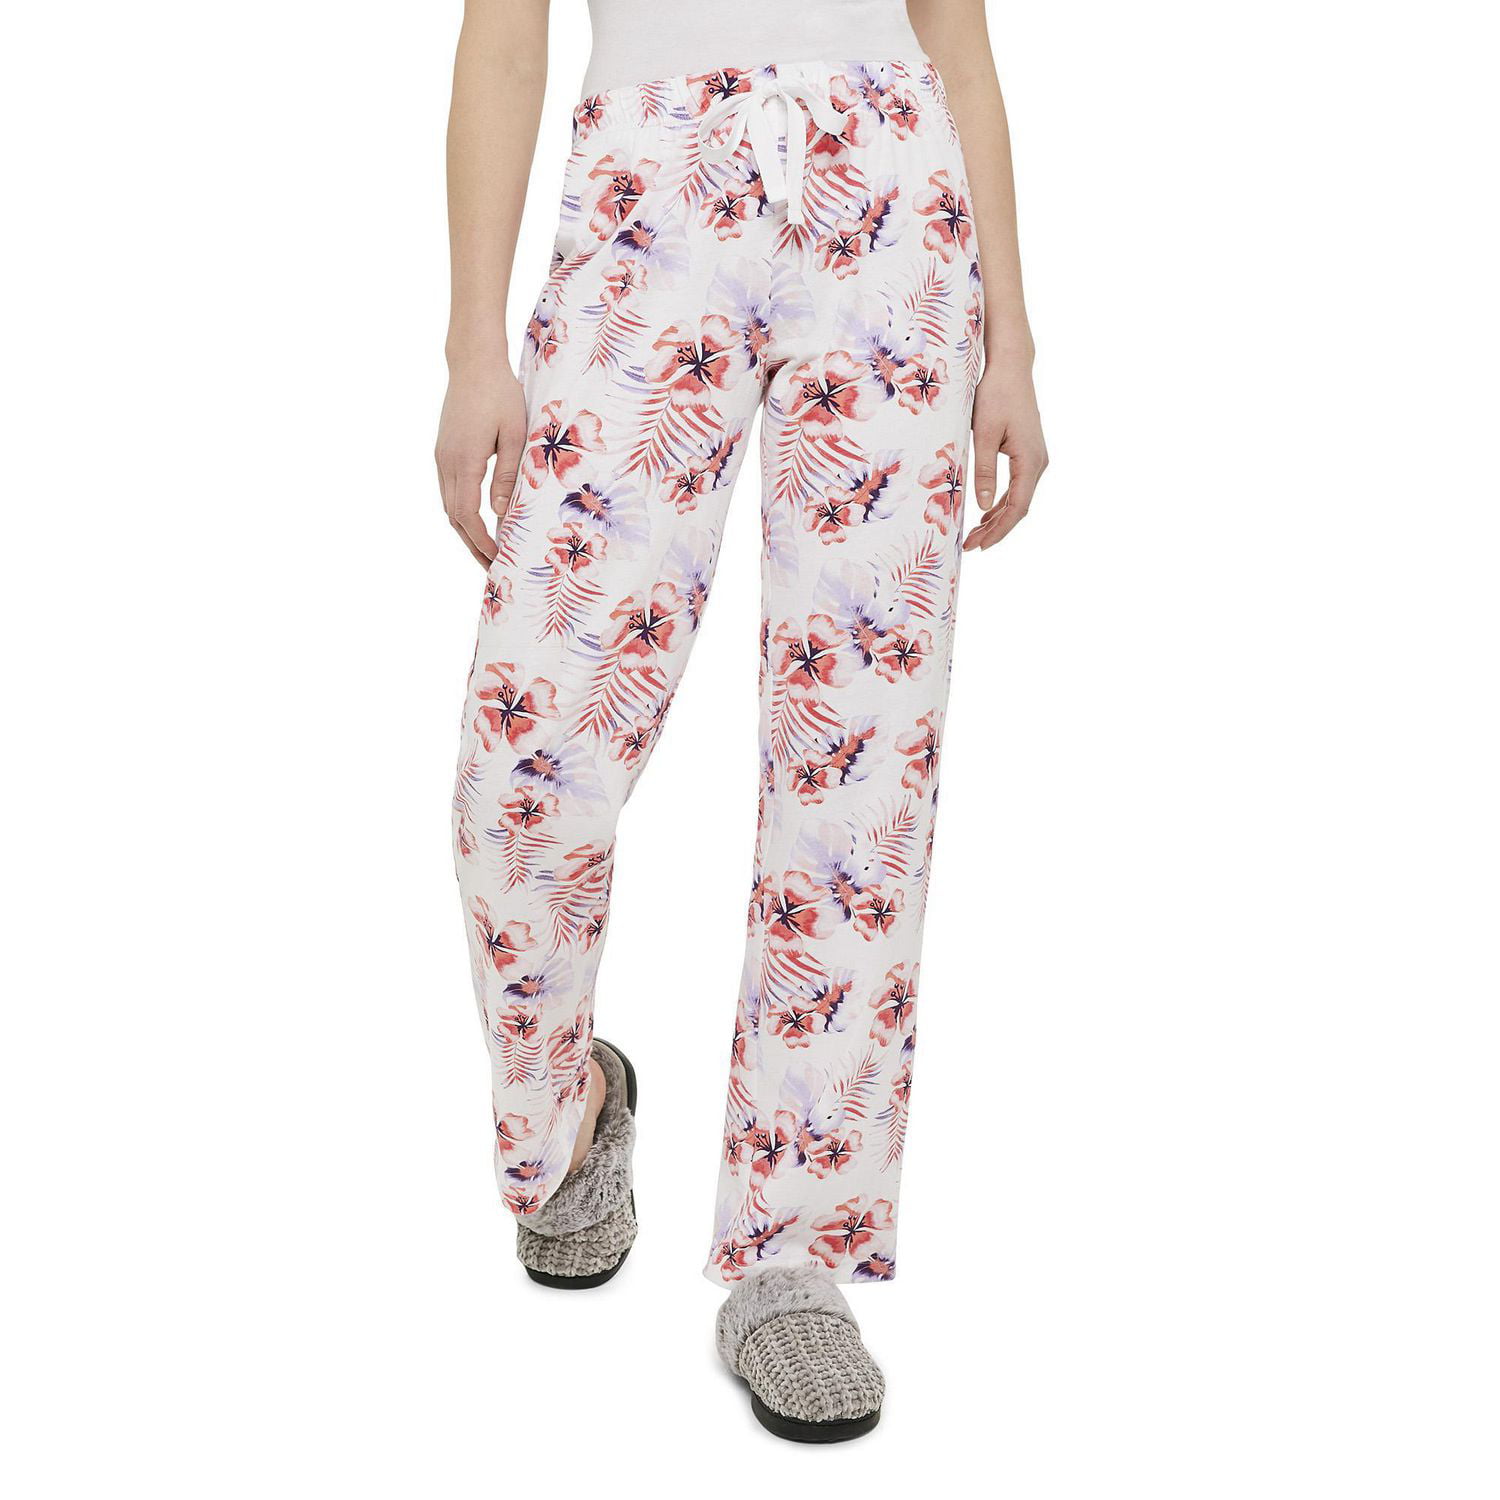 George Women's Cotton Pajama Pant 